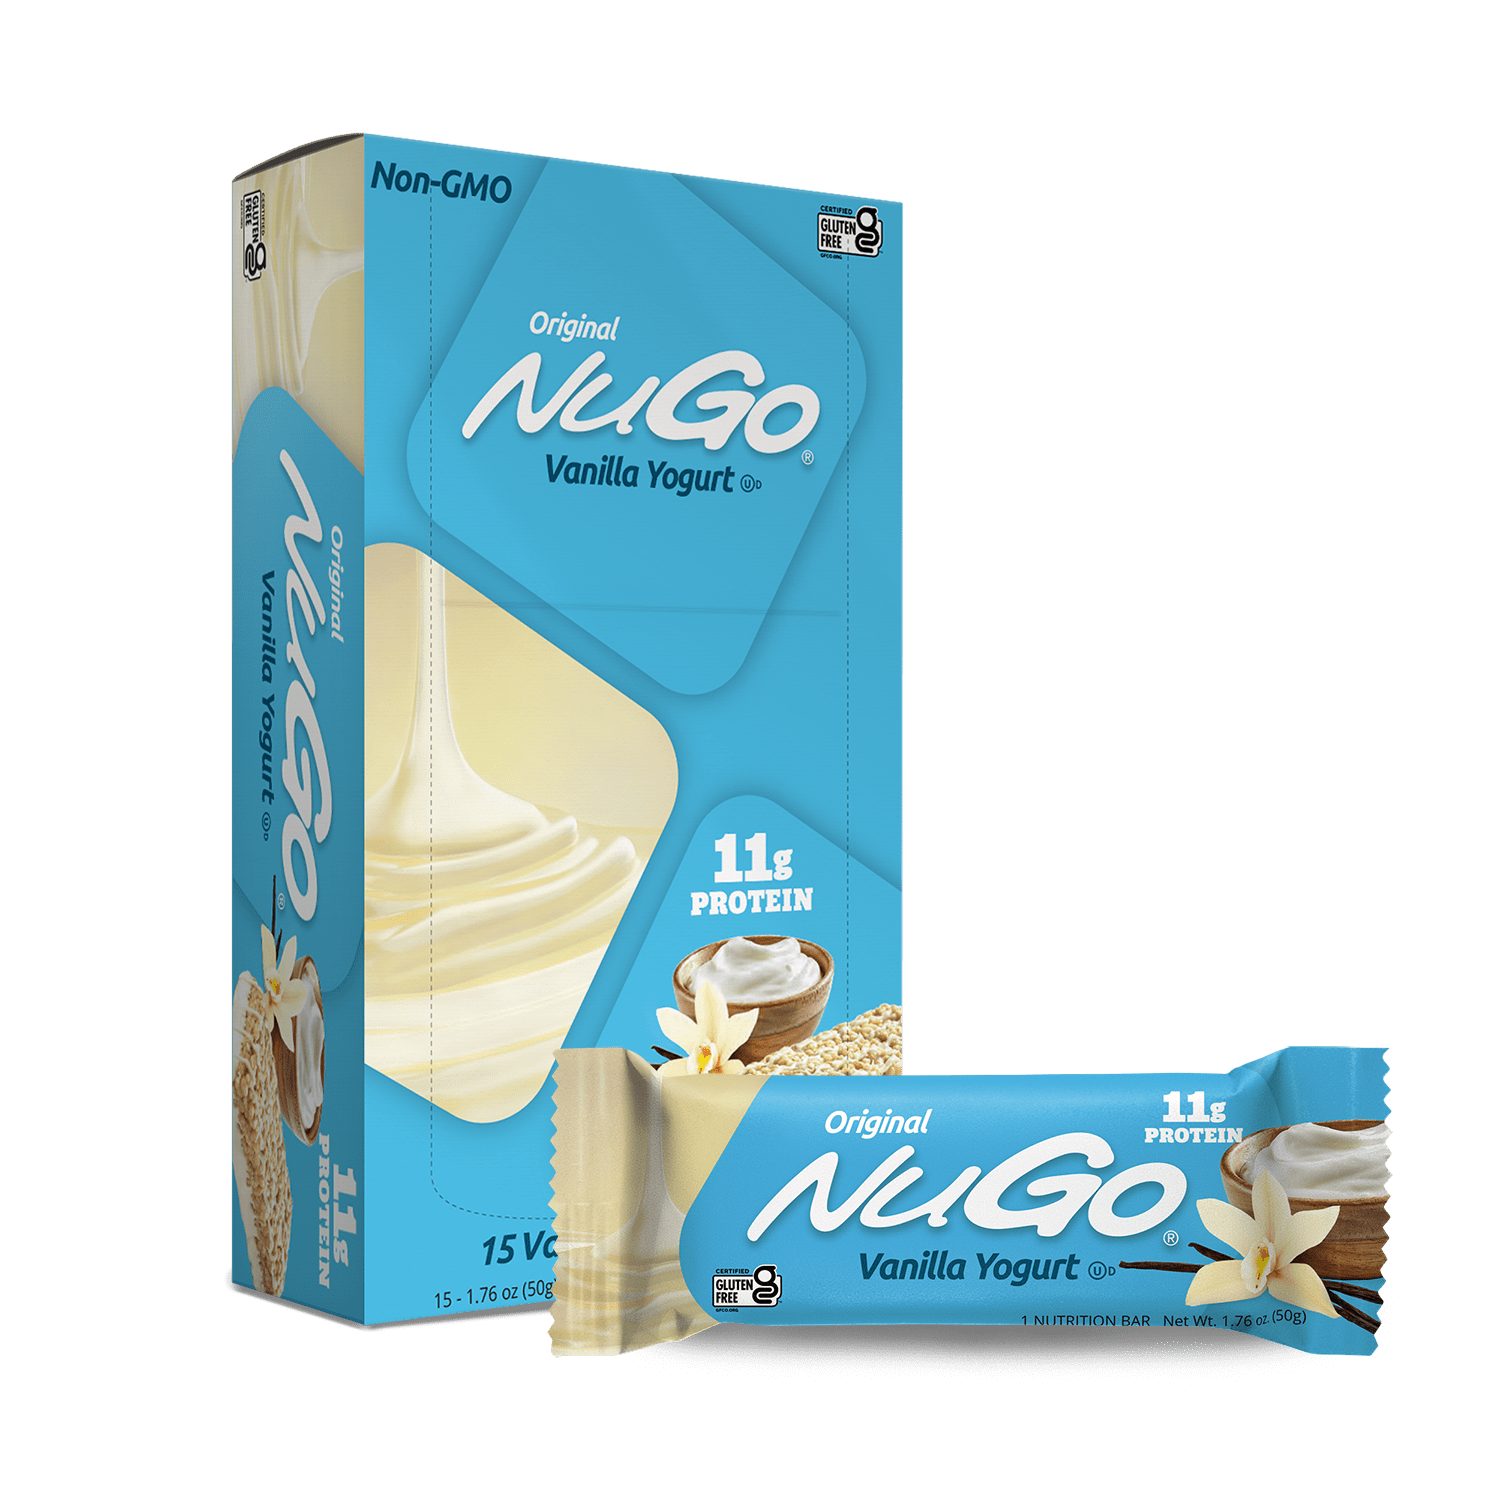 NuGo Original Vanilla Yogurt Bar and Box